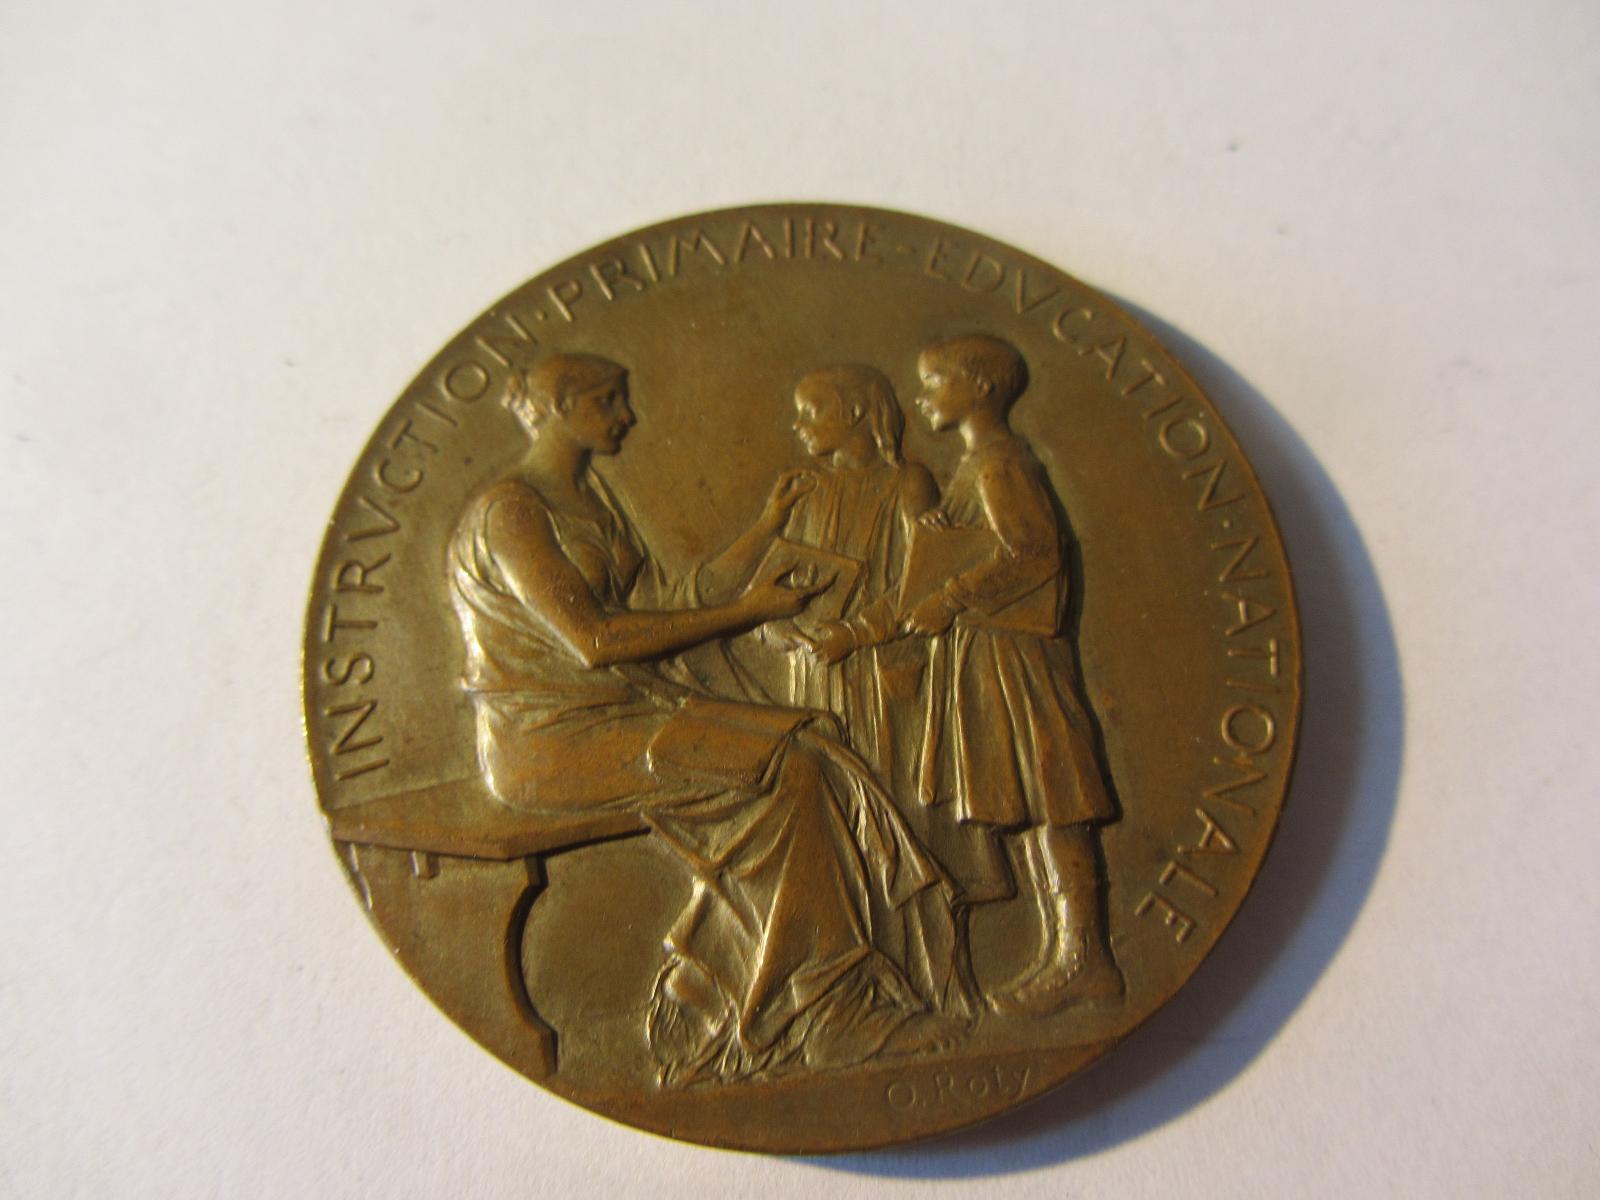 Francie Medaile Ministerstvo veřejného vyučování, Pierre Albert 1893 - Numismatika